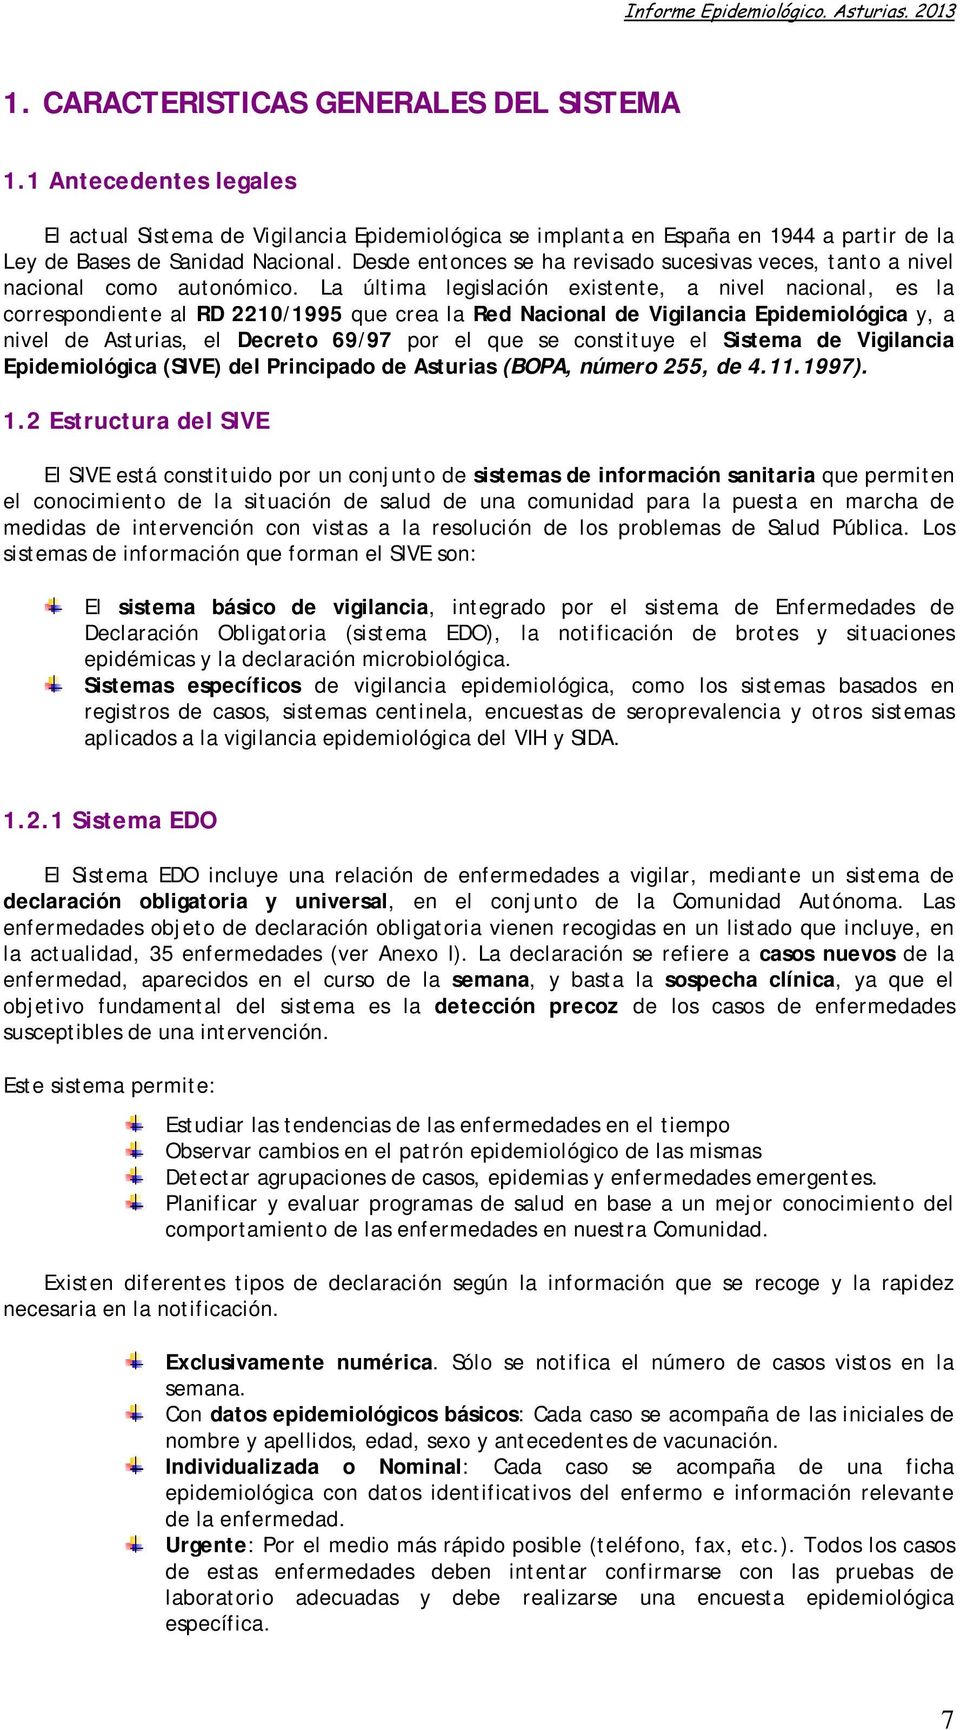 La última legislación existente, a nivel nacional, es la correspondiente al RD 2210/1995 que crea la Red Nacional de Vigilancia Epidemiológica y, a nivel de Asturias, el Decreto 69/97 por el que se